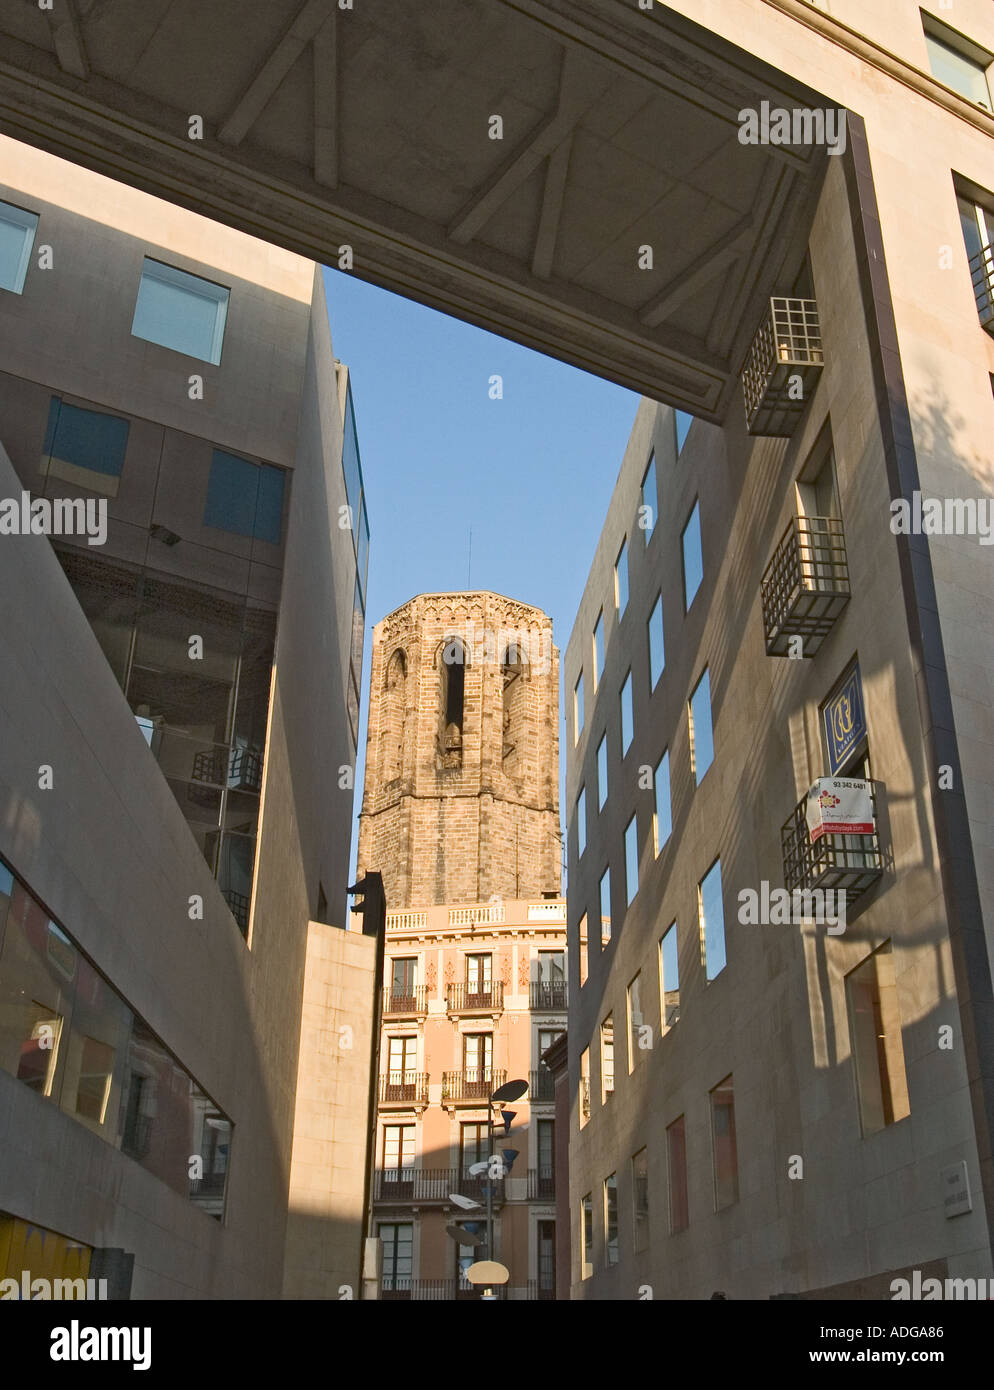 Barcelone Espagne Tour de Santa Maria del Pi contraste avec l'architecture moderne Banque D'Images